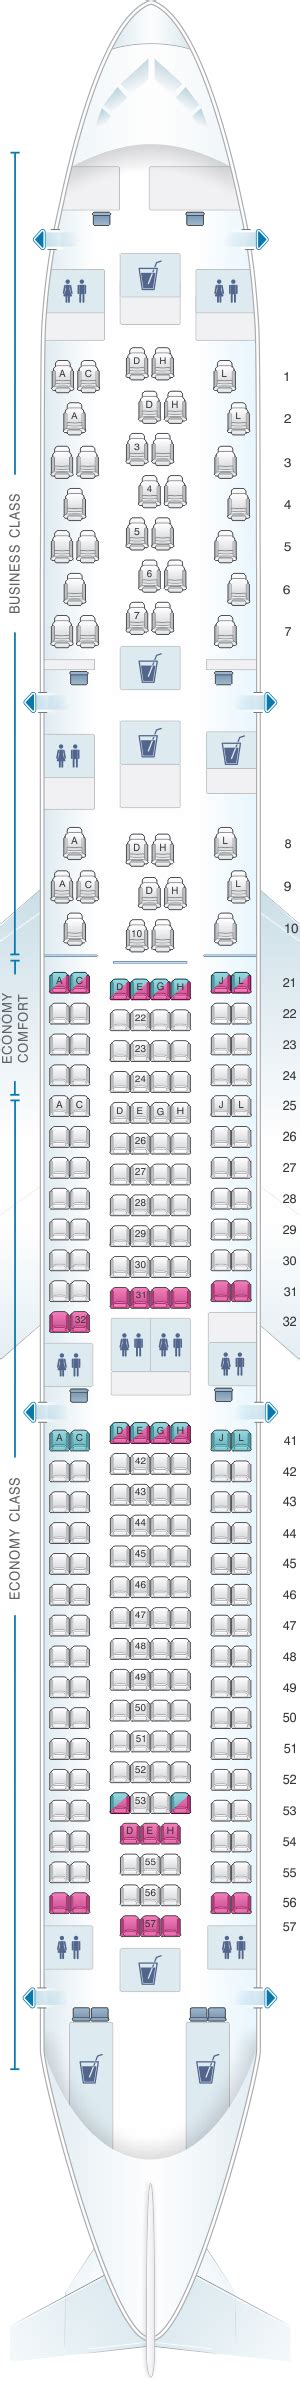 Seat Map Finnair Airbus A330 300 263pax Seatmaestro